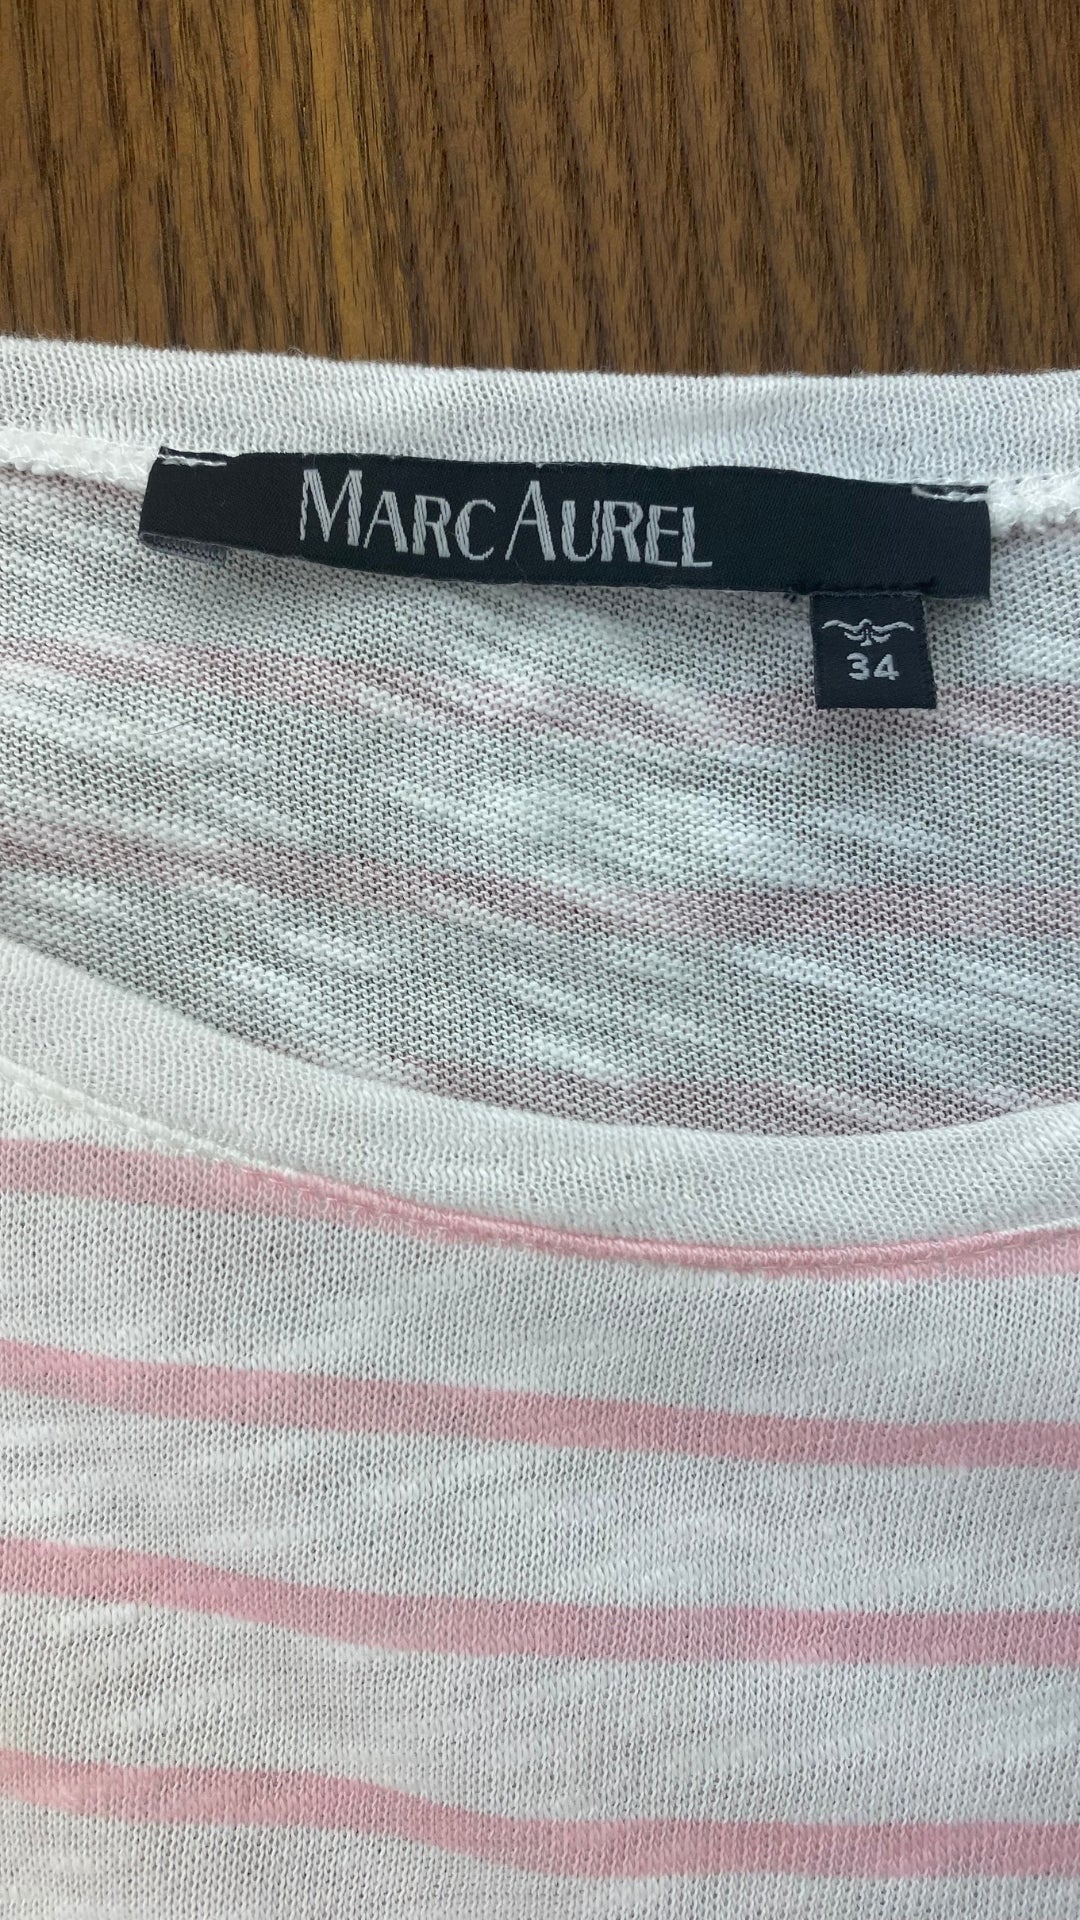 Chandail rayures rose petites manches trompettes, Marc Aurel, taille 34 (xs-s). Vue de l'étiquette de marque et taille.